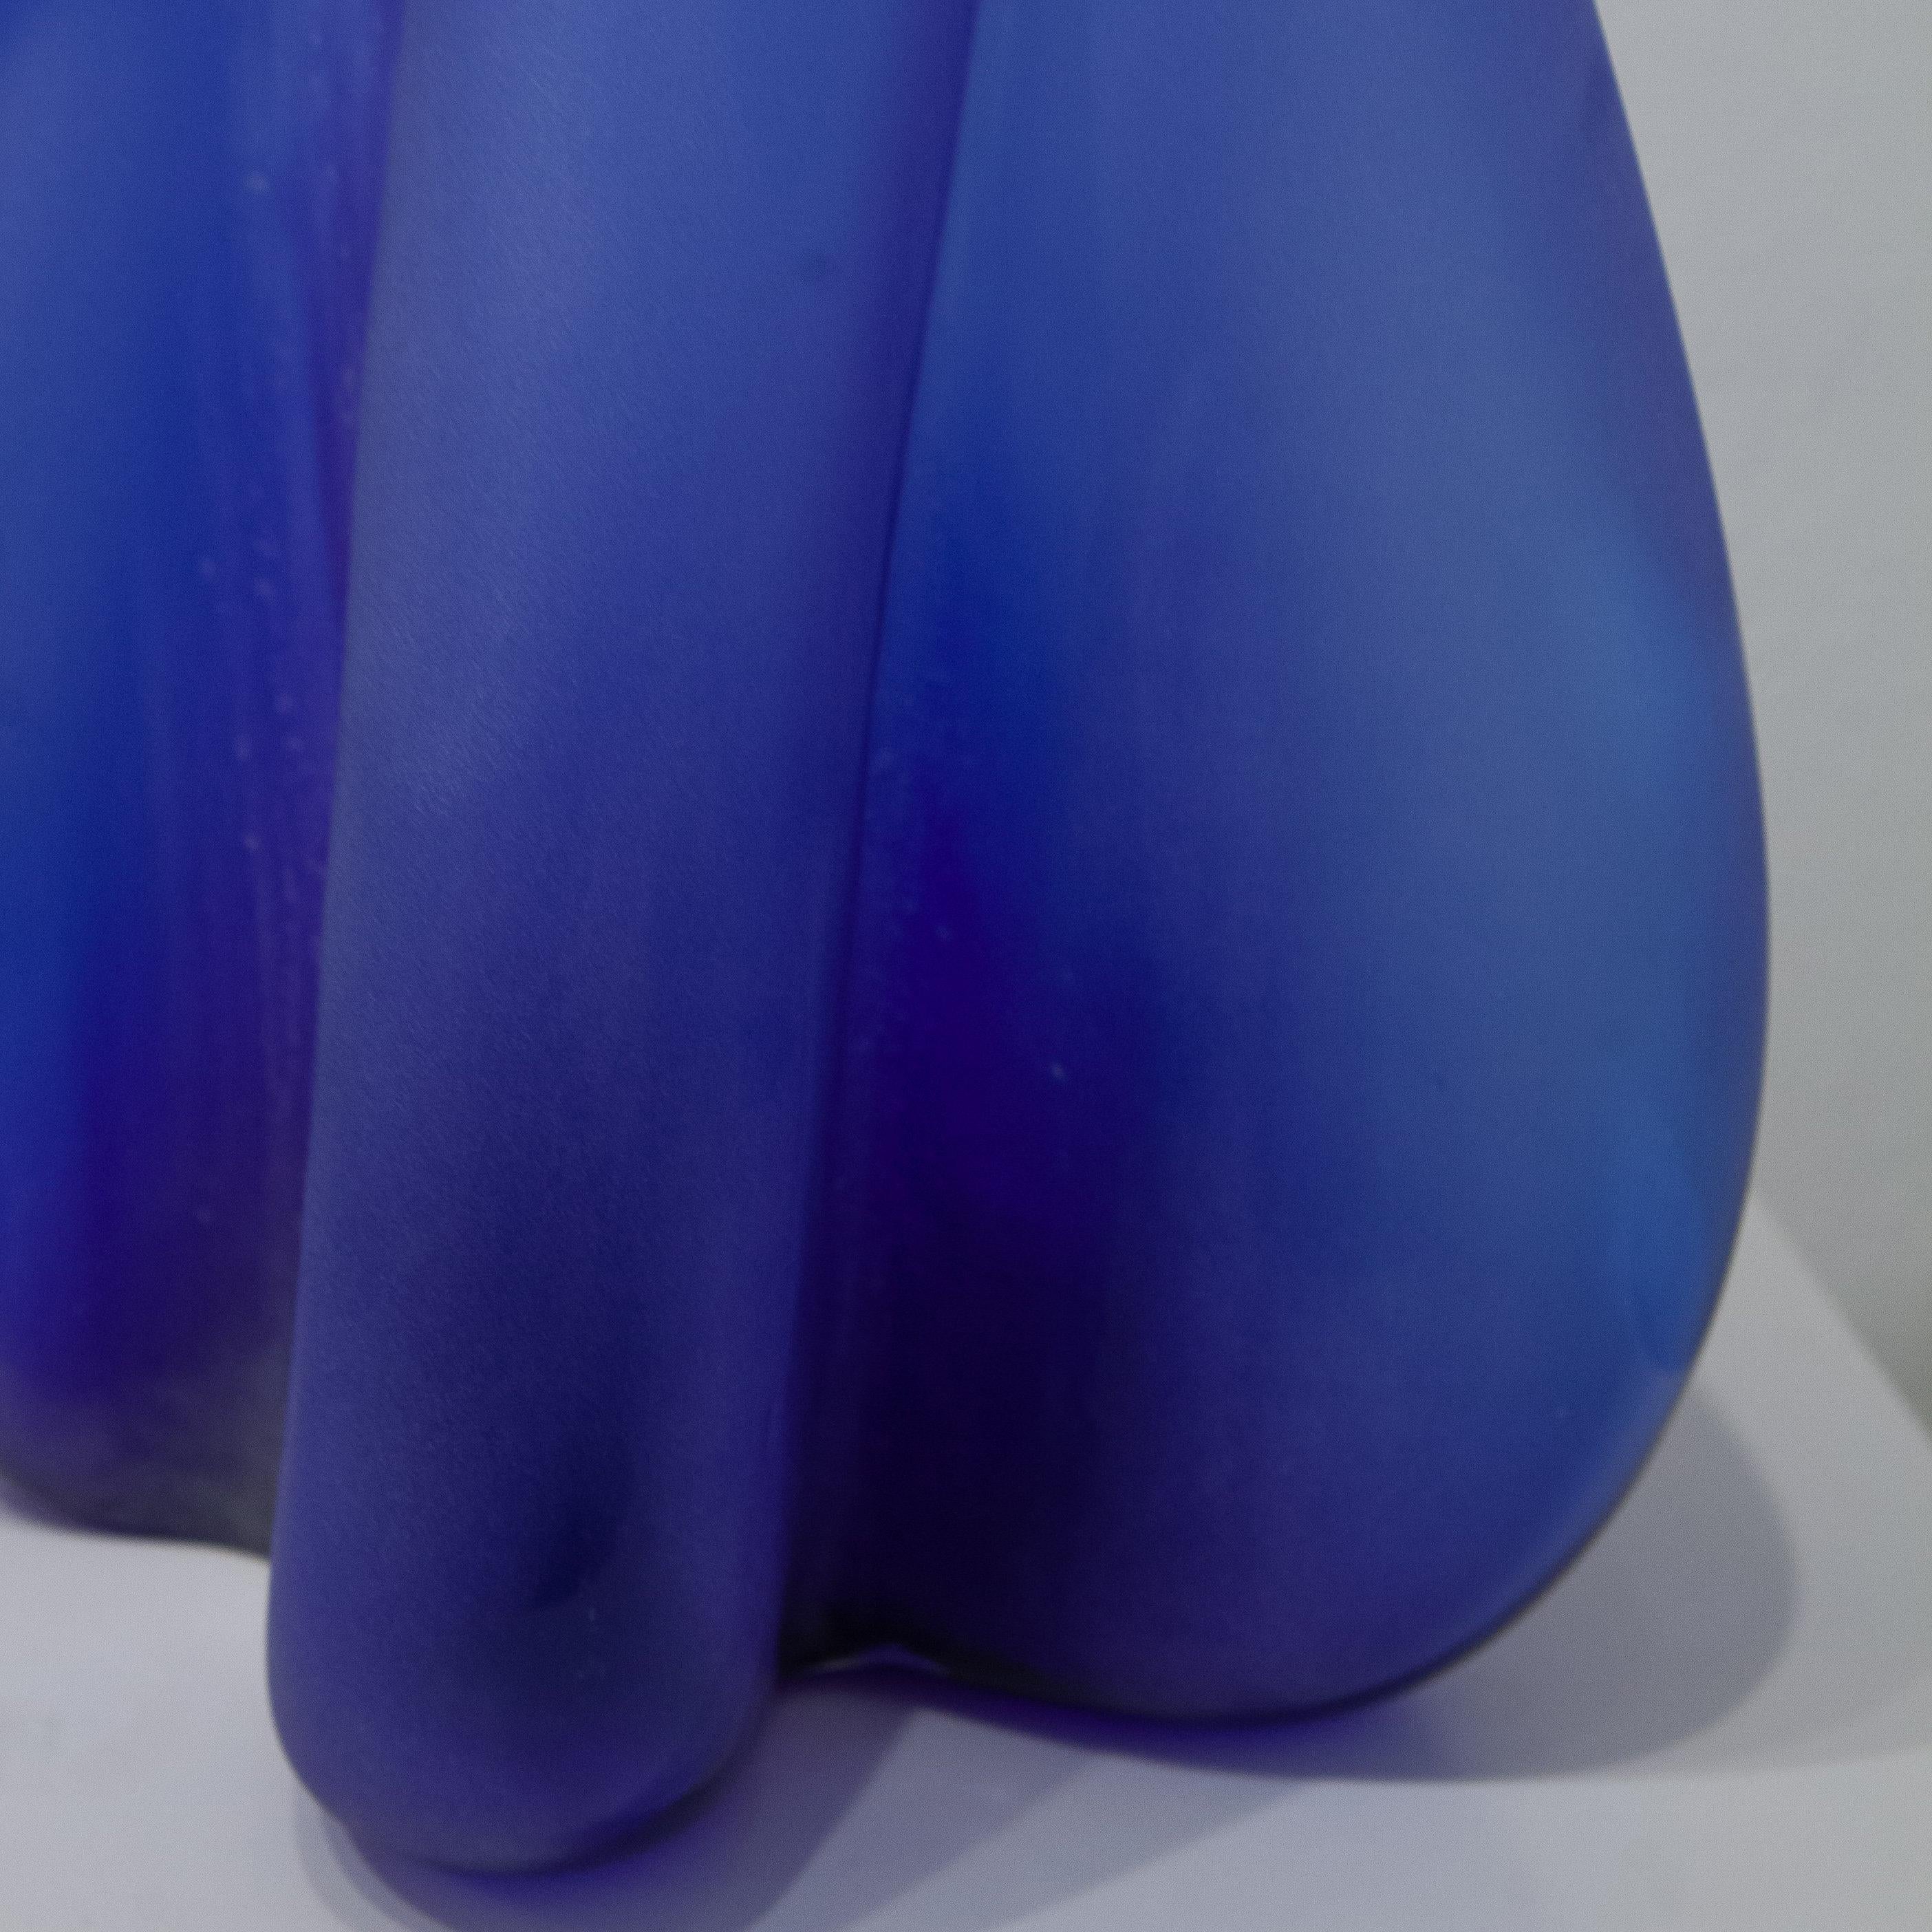 Blue Curtain (blown glass design craft cobalt blue sleek table-top sculpture) - Contemporary Sculpture by Robert Burch